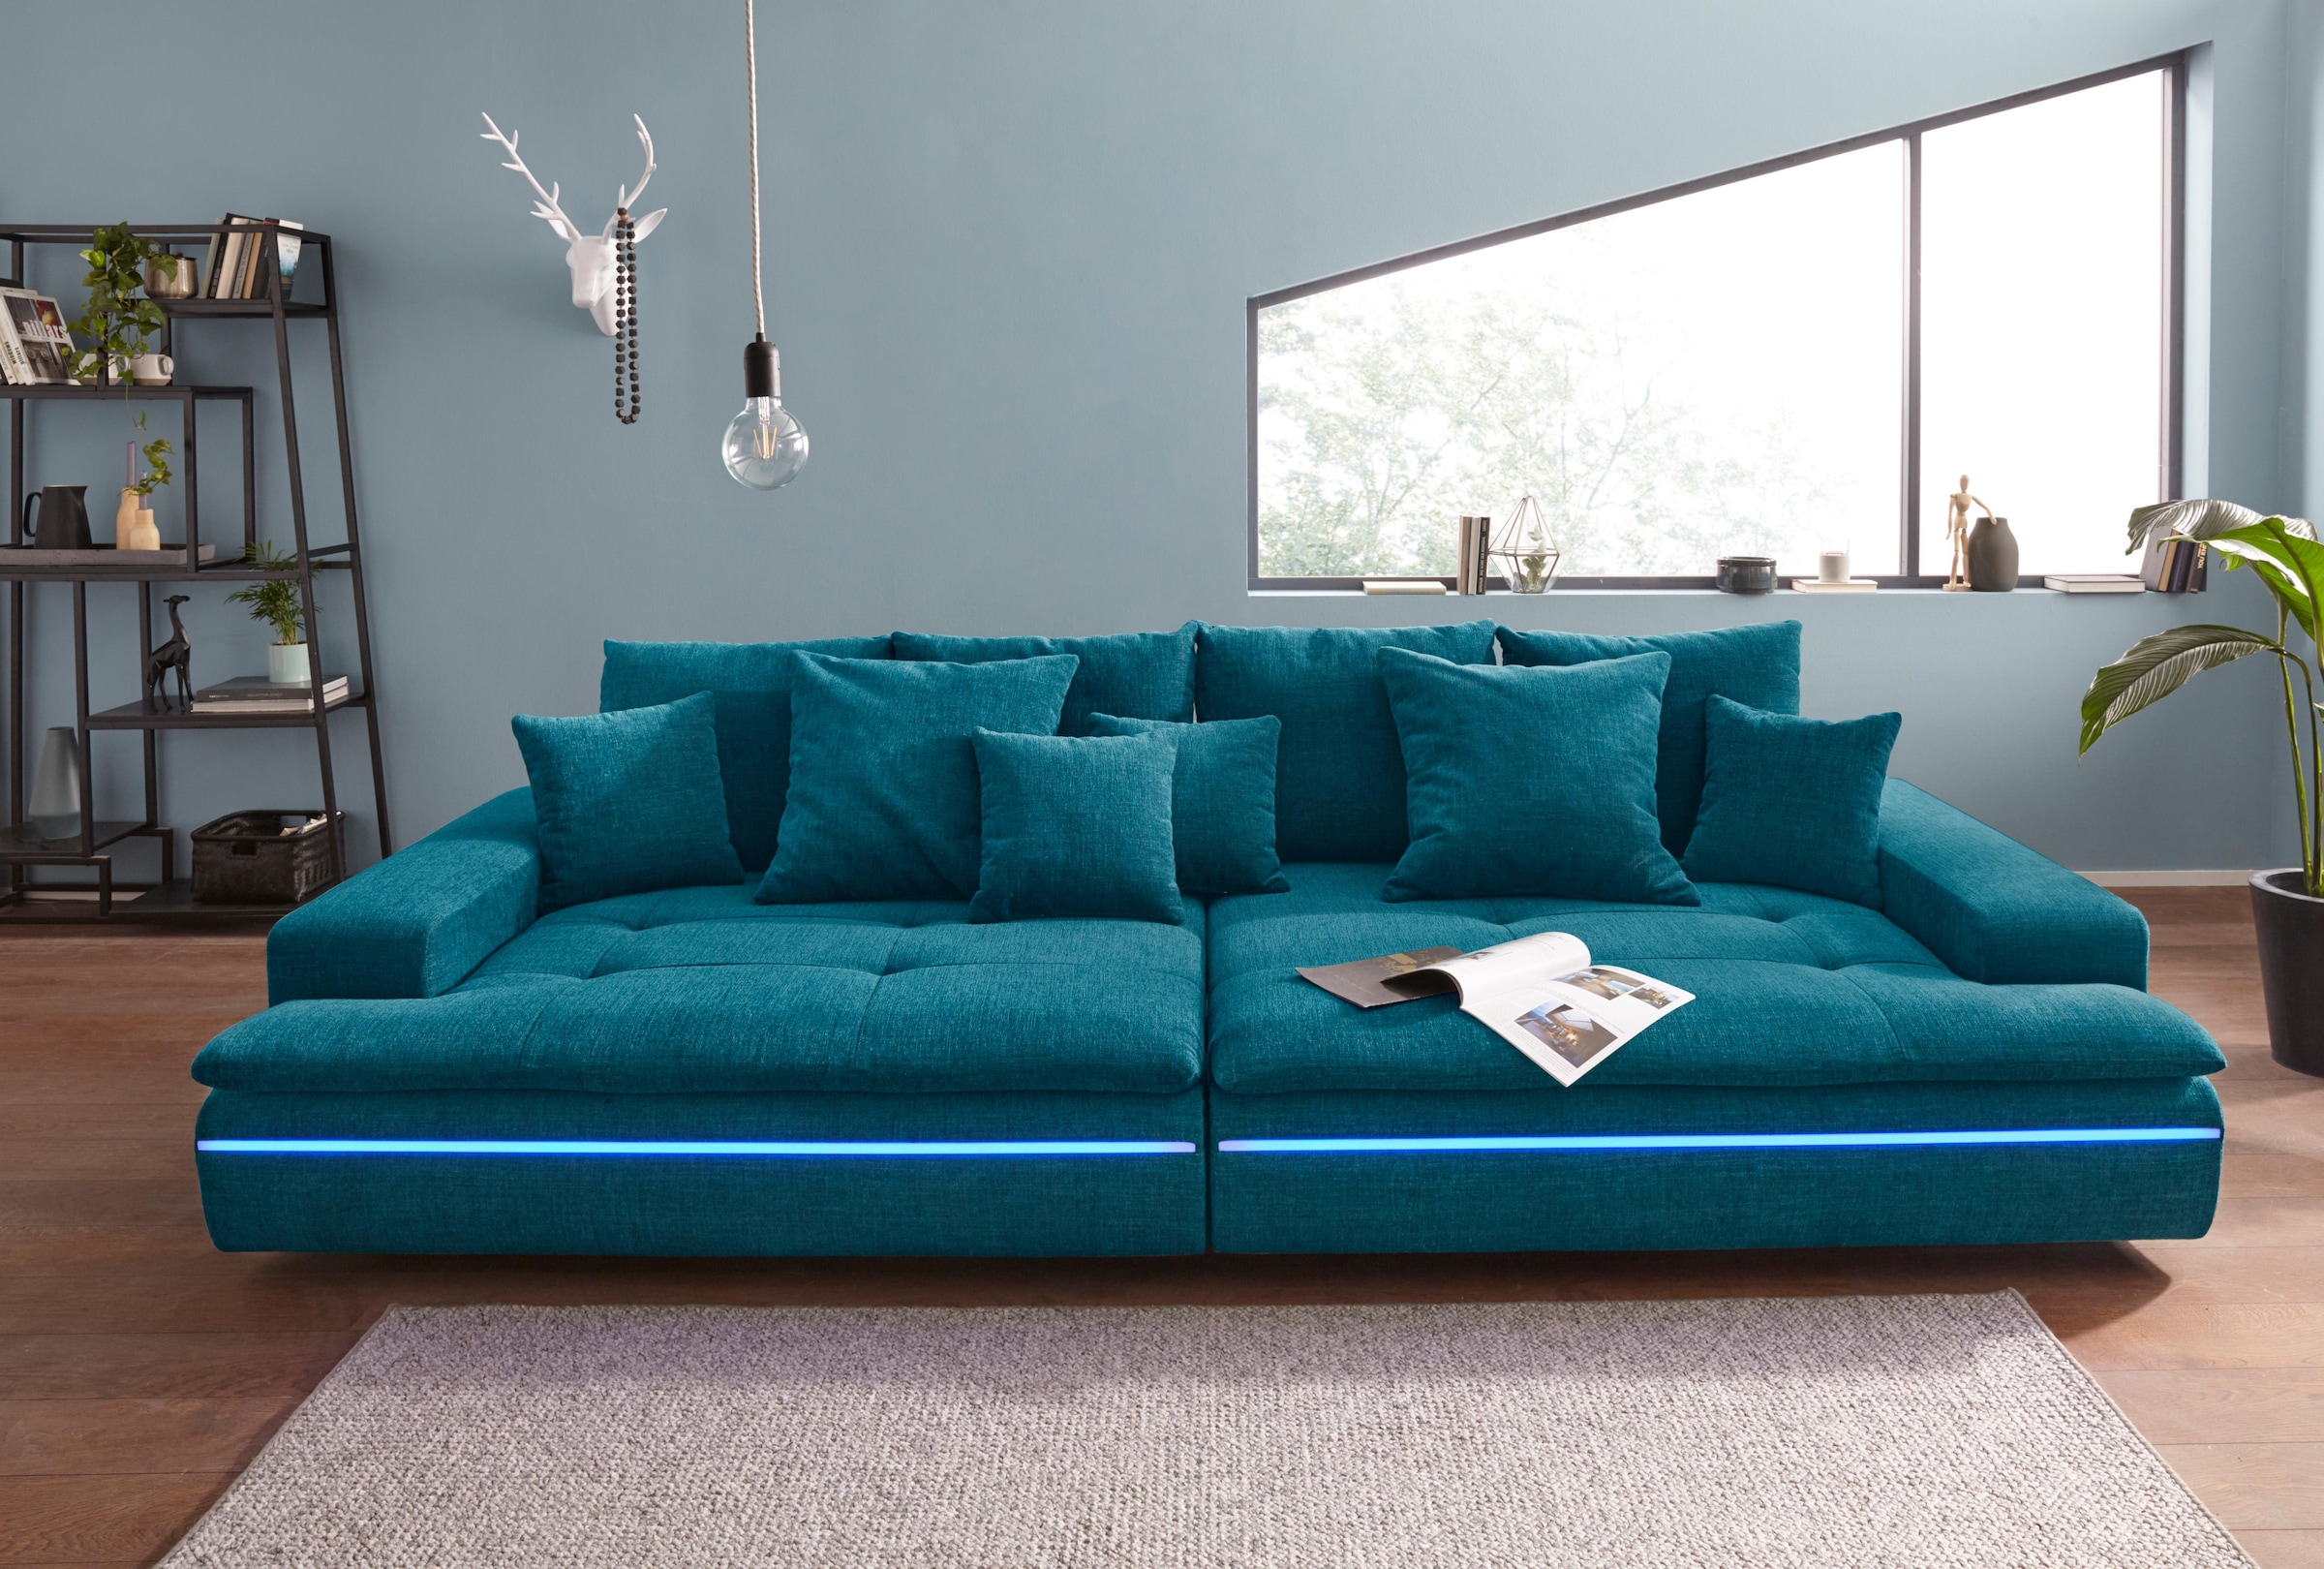 Mr. Couch Big-Sofa »Haiti«, wahlweise mit Kaltschaum (140kg Belastung/Sitz) und AquaClean-Stoff